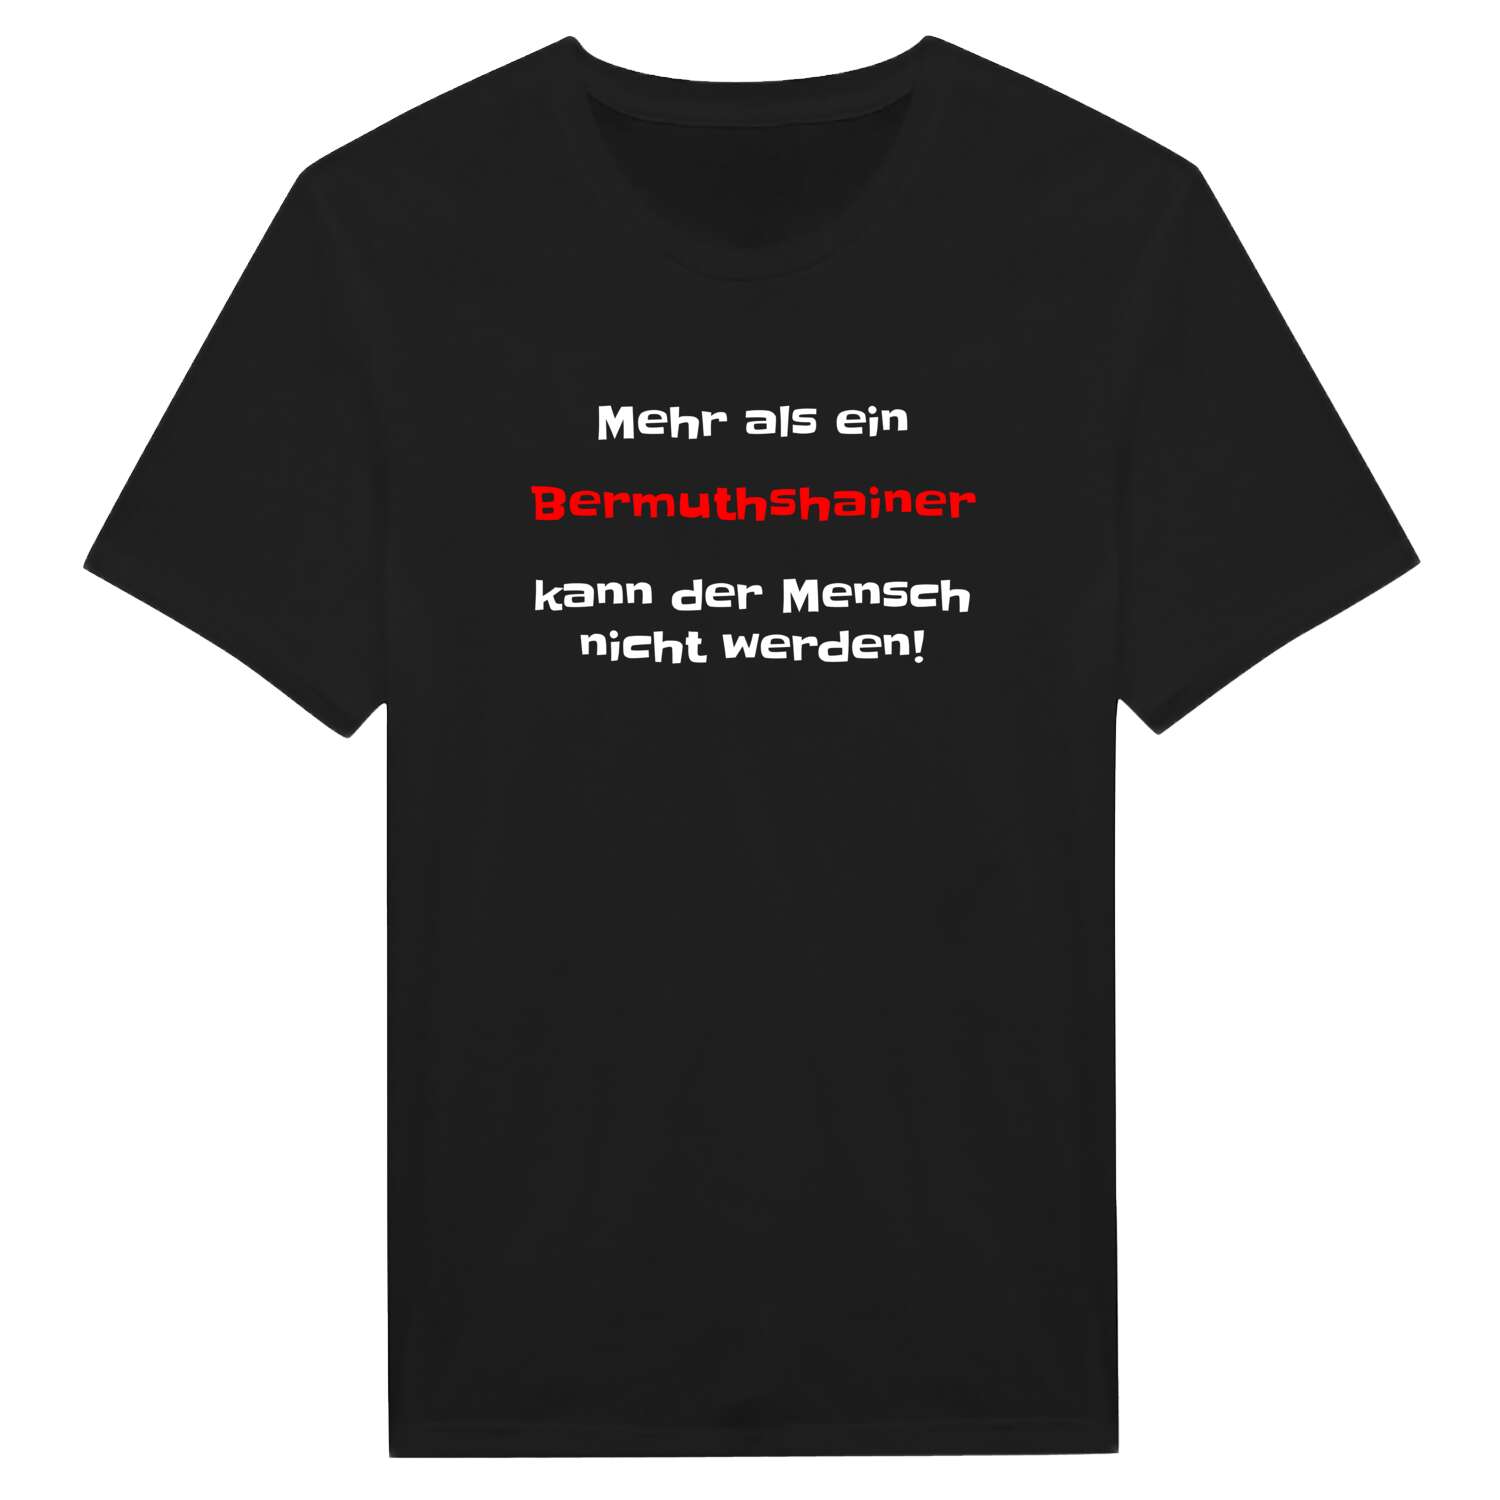 Bermuthshain T-Shirt »Mehr als ein«